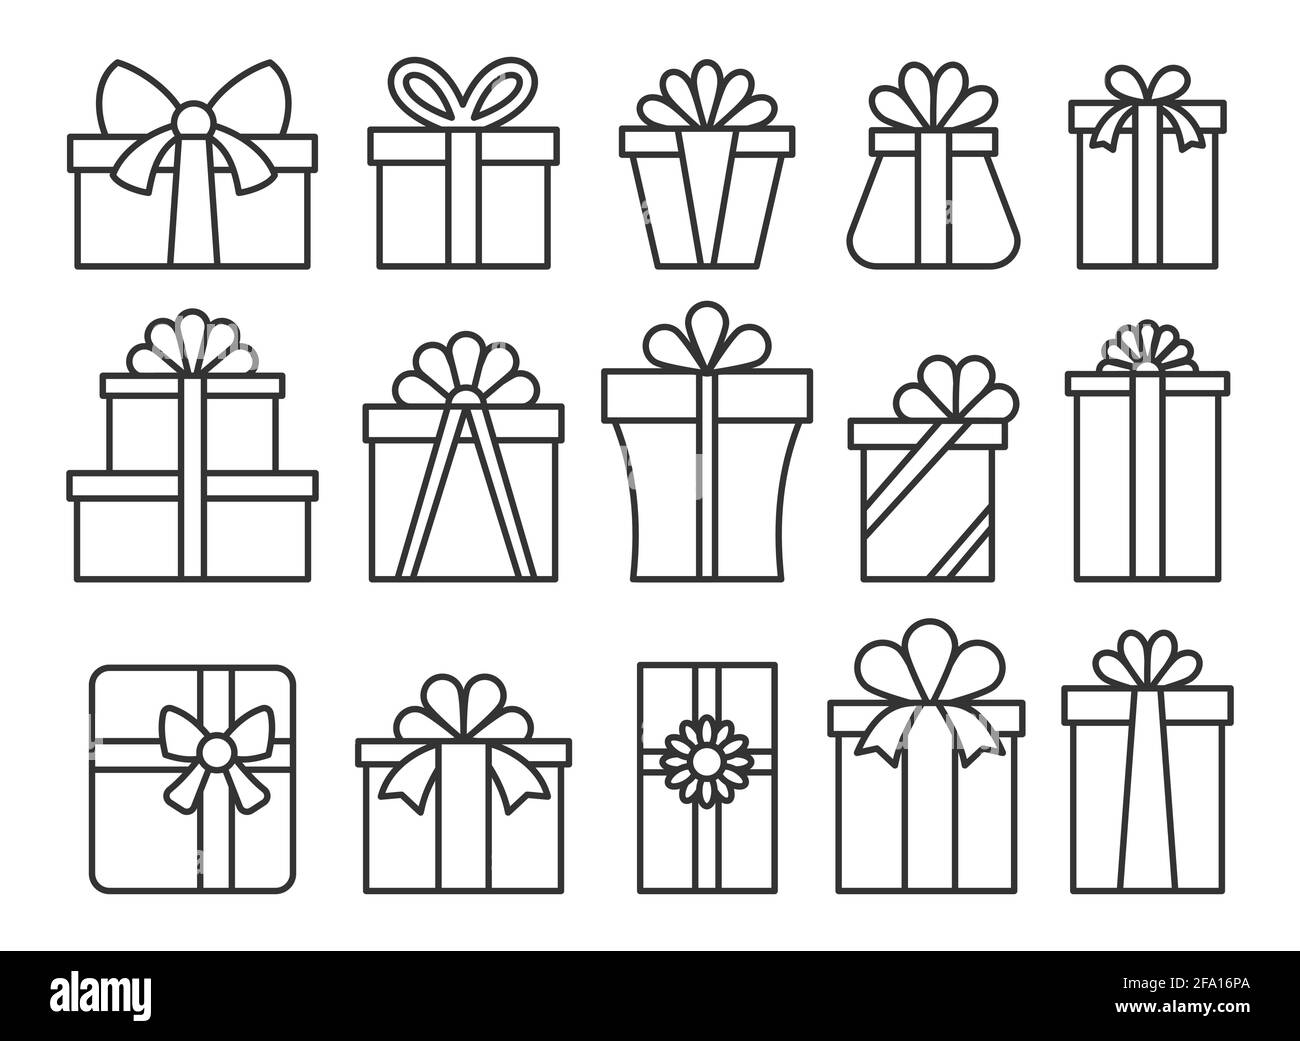 Geschenkbox Linie Symbol Set. Einfache Outline geschenkbox mit Schleife Piktogramm-Pack. Alles gute zum Geburtstag, frohe weihnachten, Neujahr Geschenk-Paket-Symbol. Feiertagsfeier Valentinstag Überraschung Paket Zeichen Stock Vektor